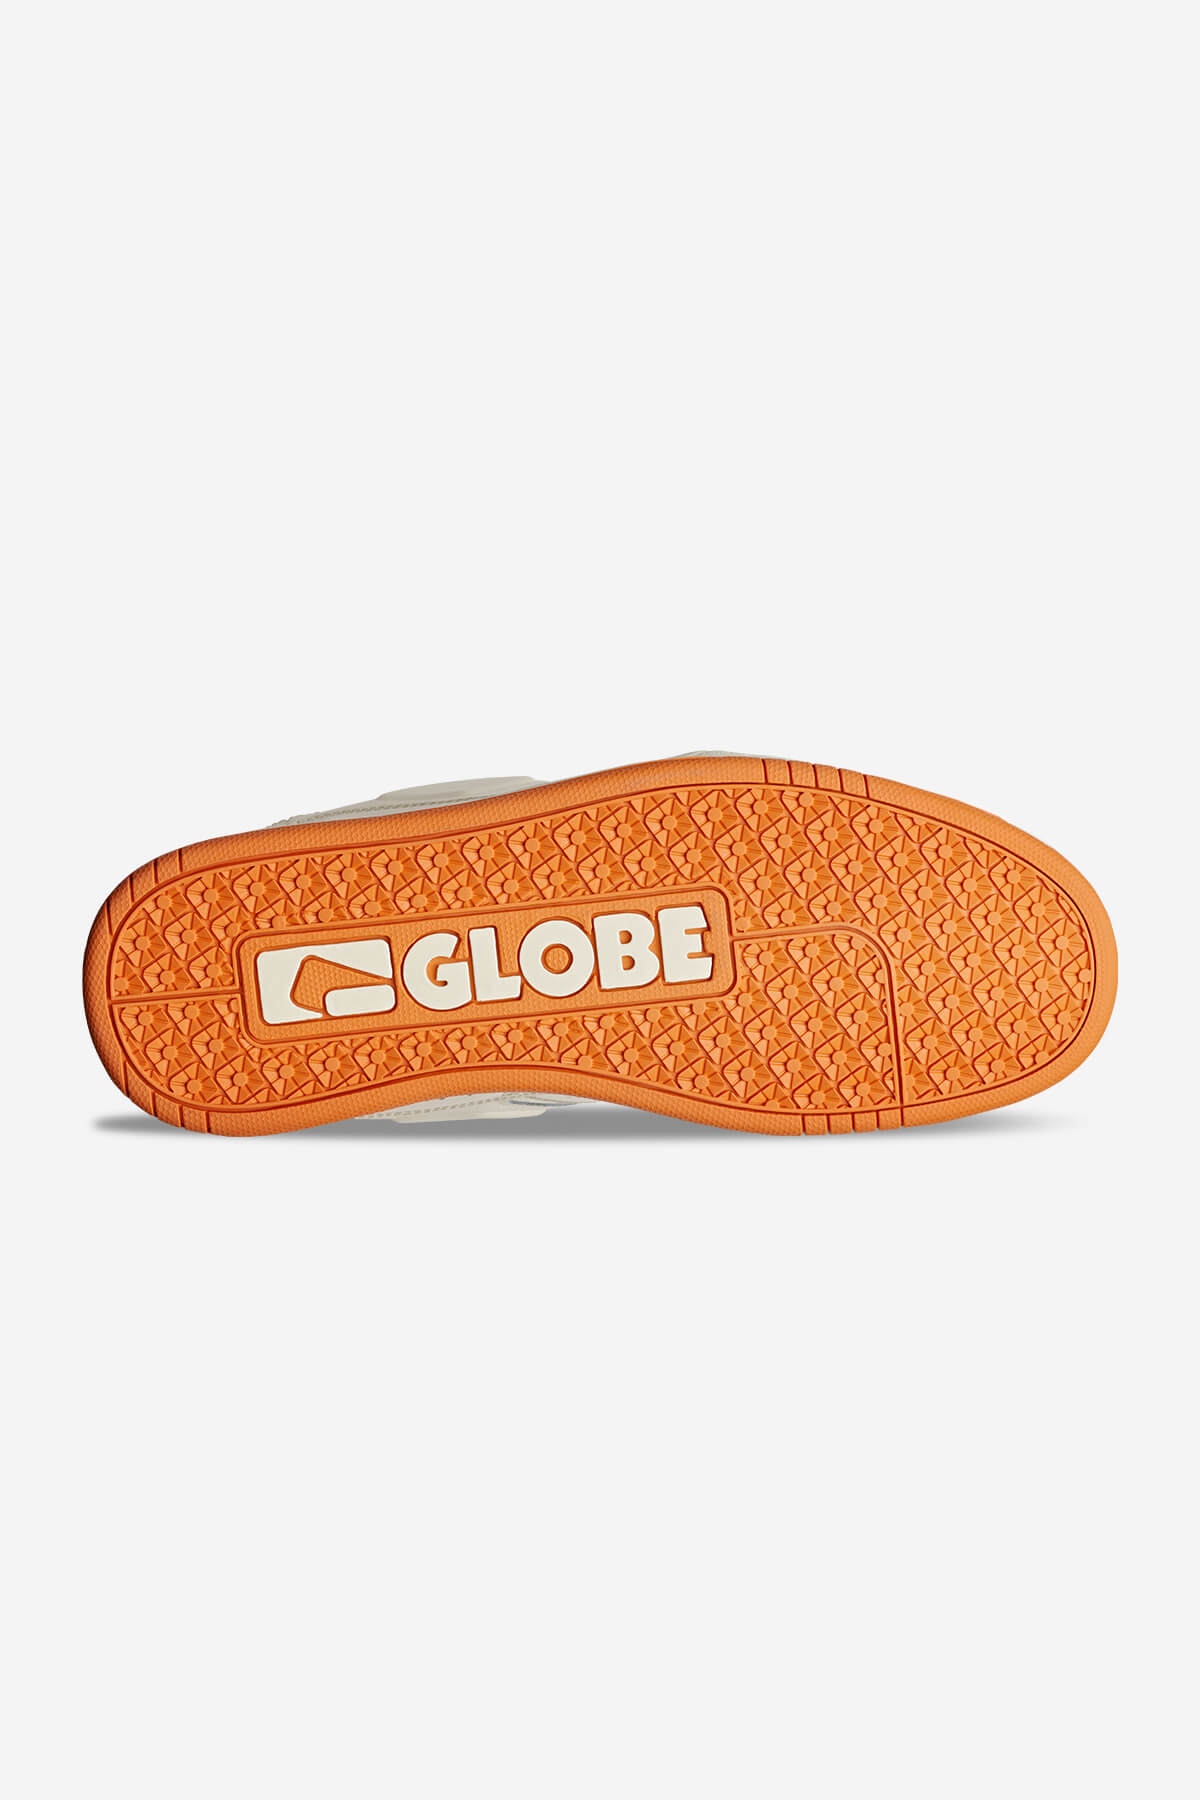 Globe Low shoes Fusion - Antique/Orange in Antique/Orange